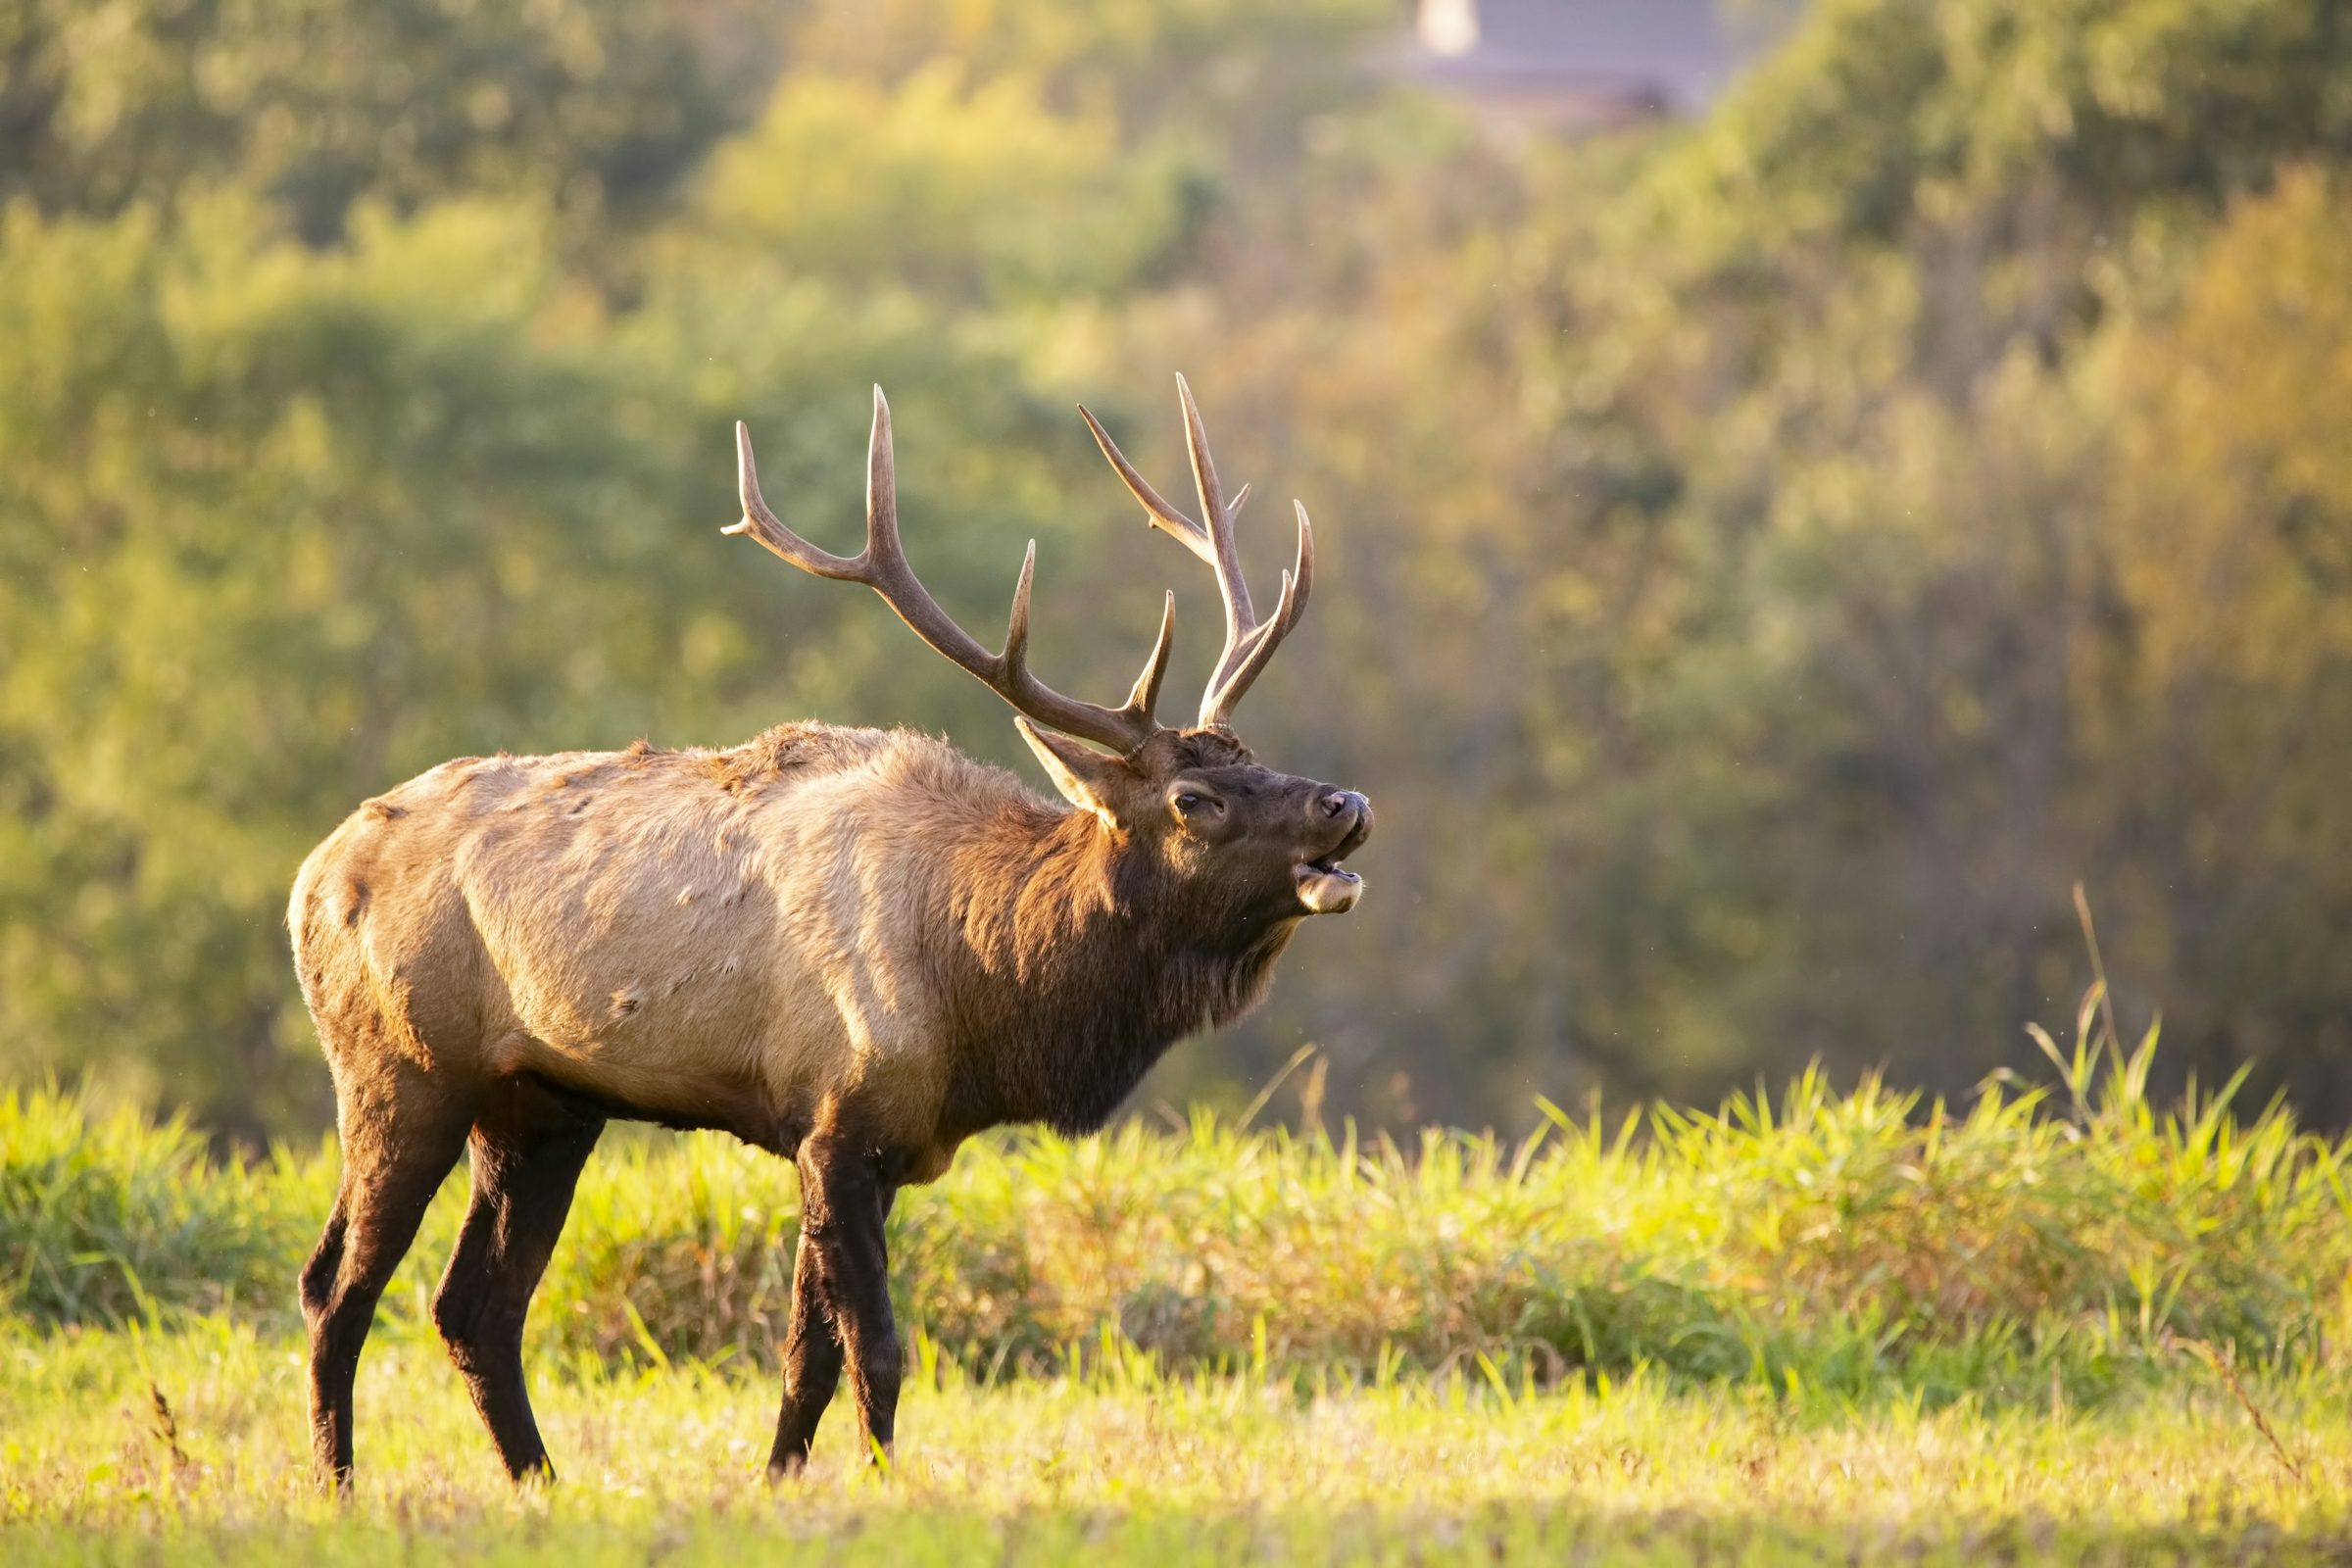 Elk county pa nudes - 🧡 Elk County Deer Test For CWD - DeerBusters.com.